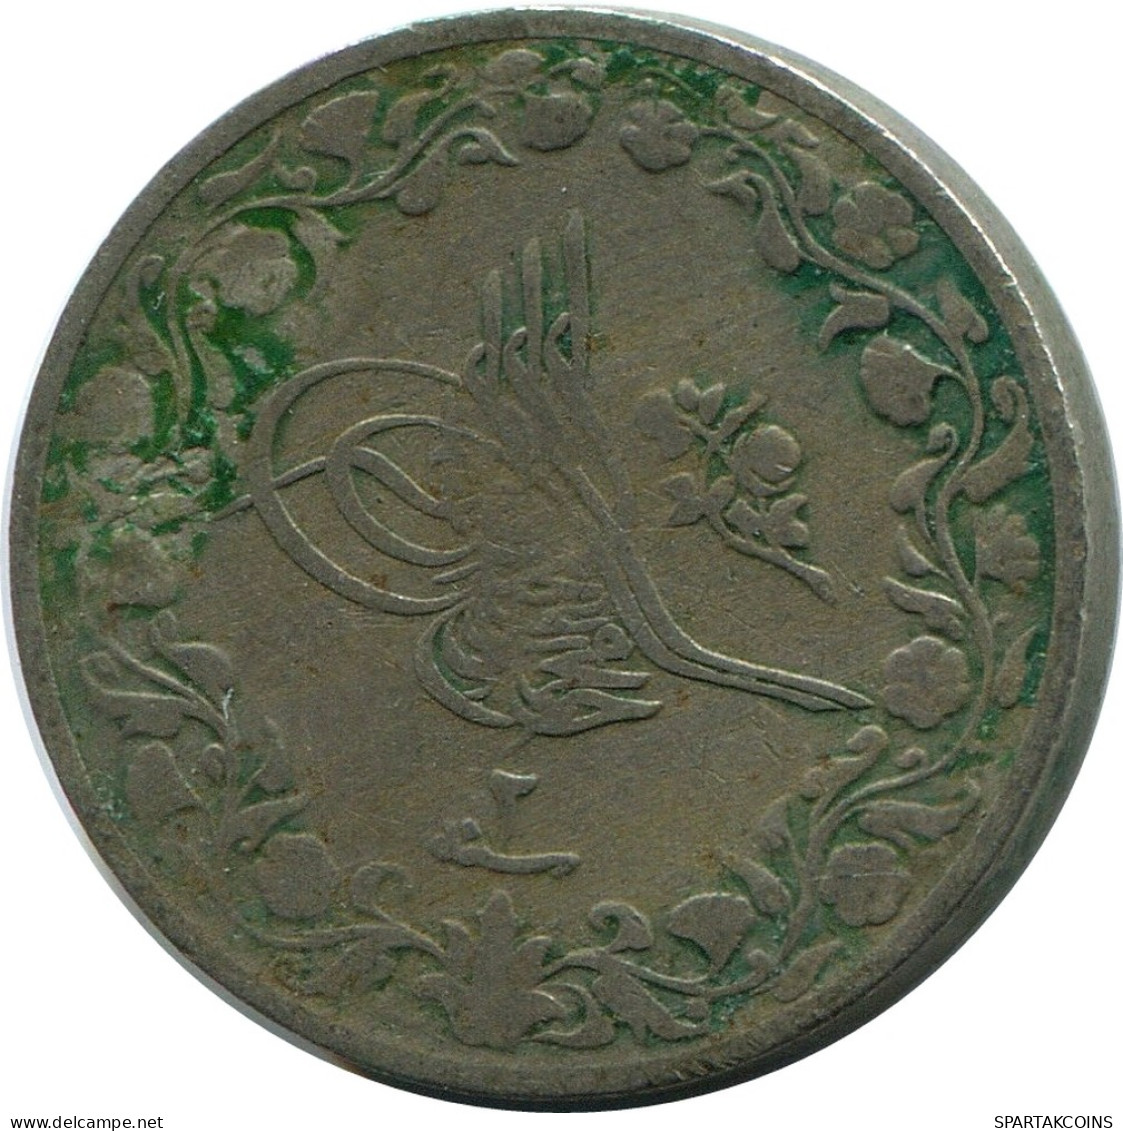 1/20 QIRSH 1910 EGYPT Islamic Coin #AK314.U - Egypt